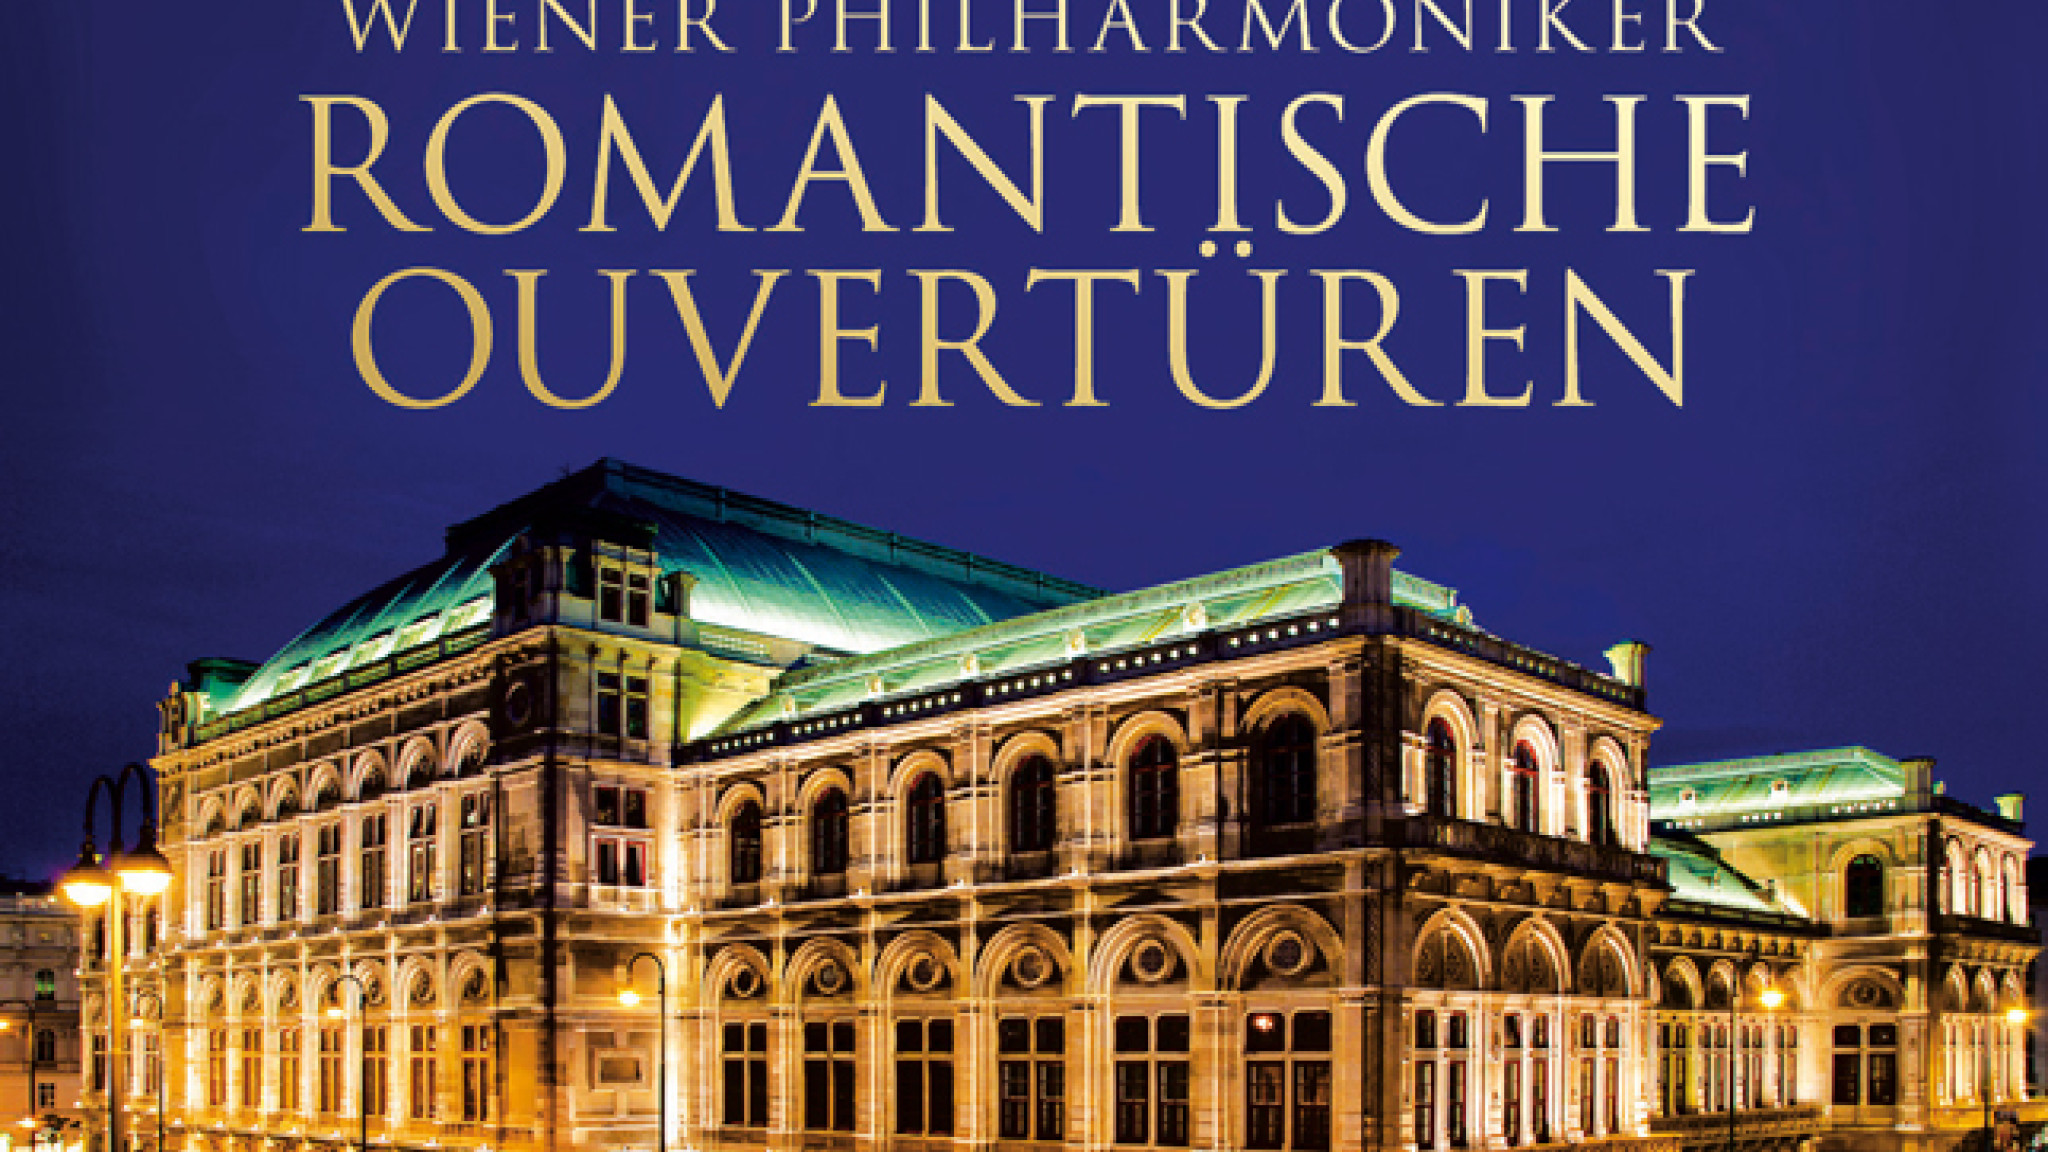 Romantische Ouvertüren – Meisteraufnahmen der Wiener Philharmoniker